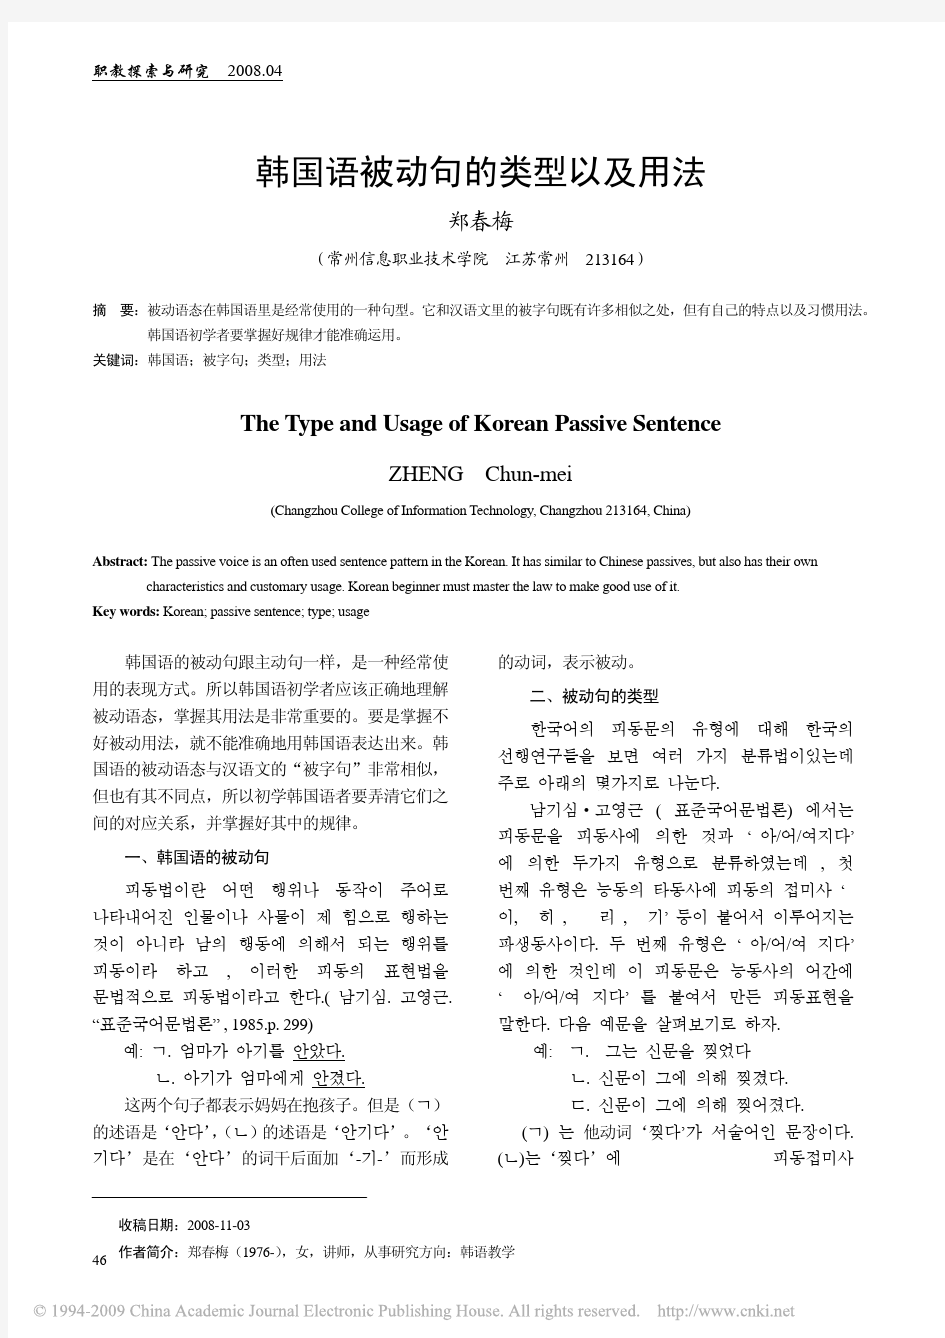 韩国语被动句的类型以及用法